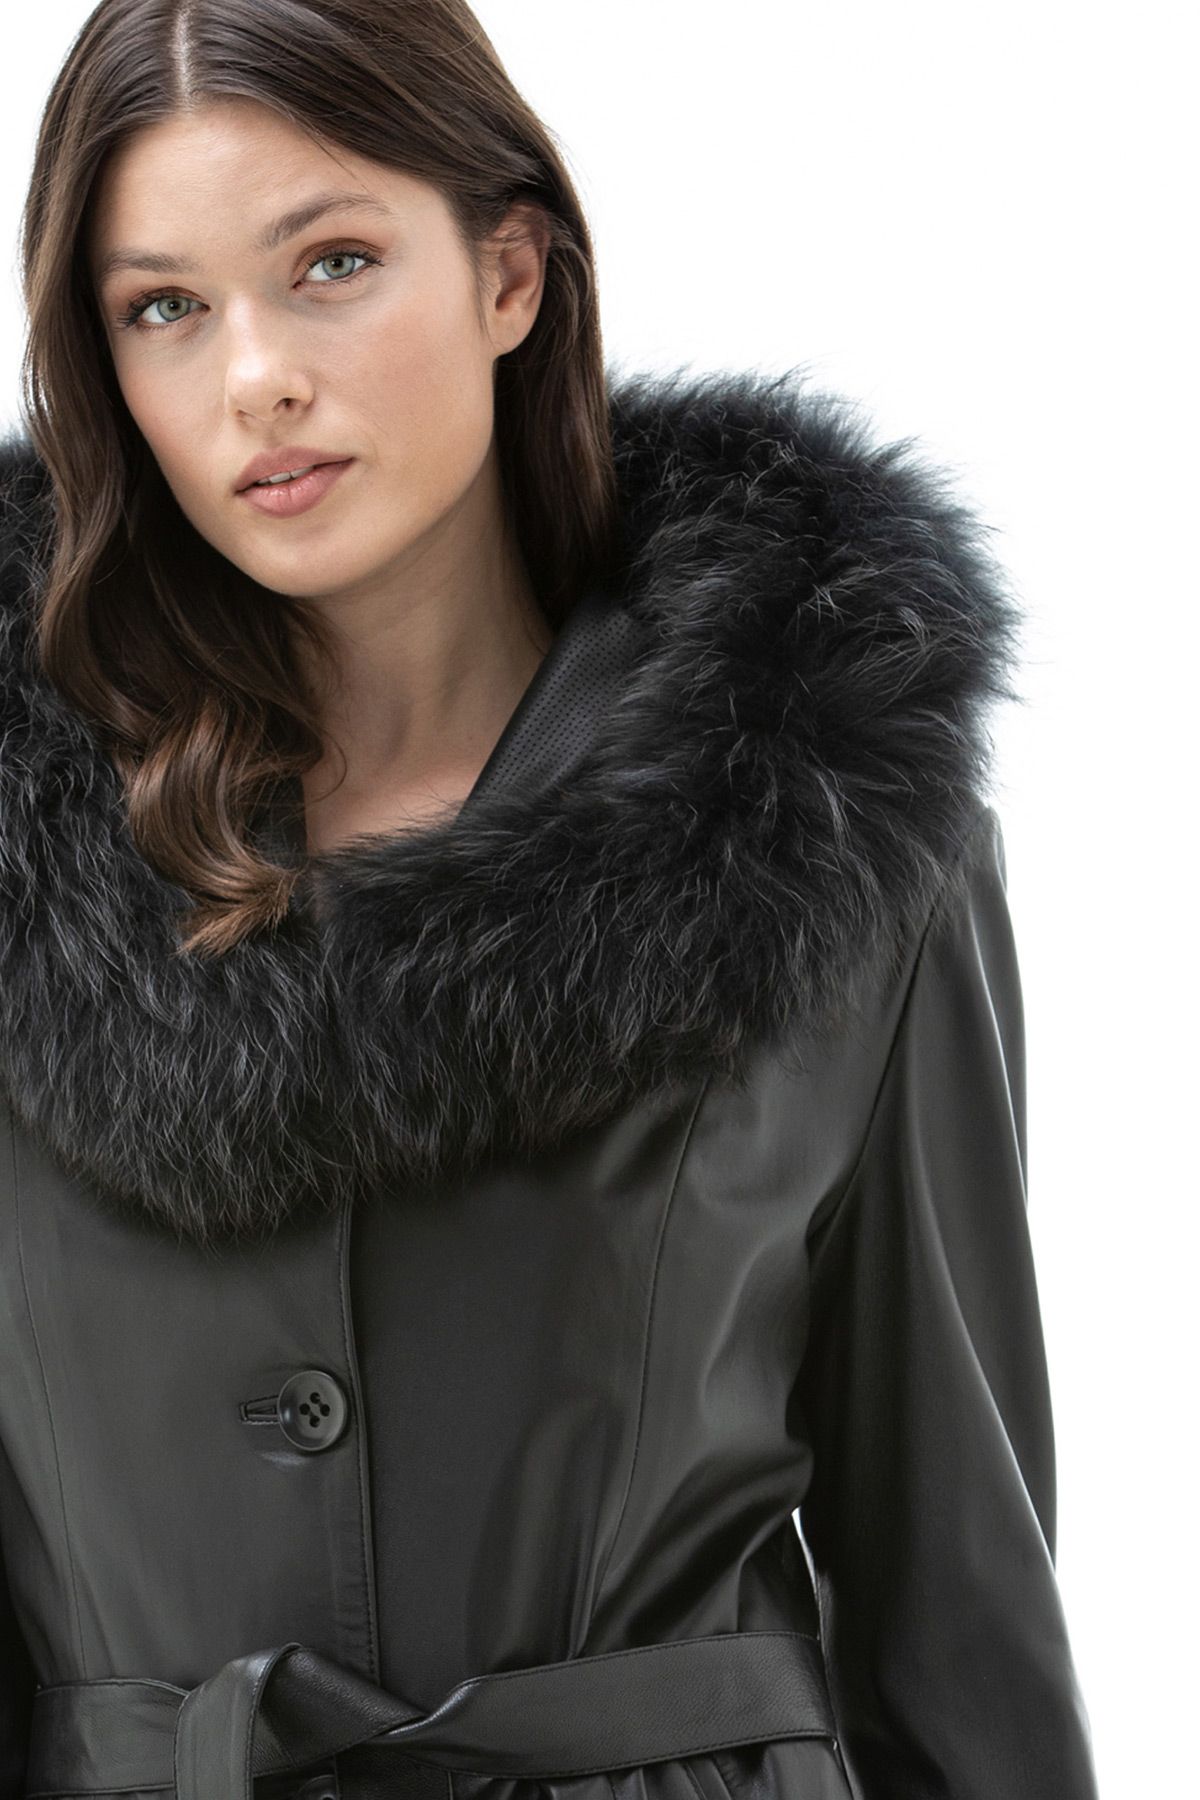 Ladies lamb leather coat w/fox trim.